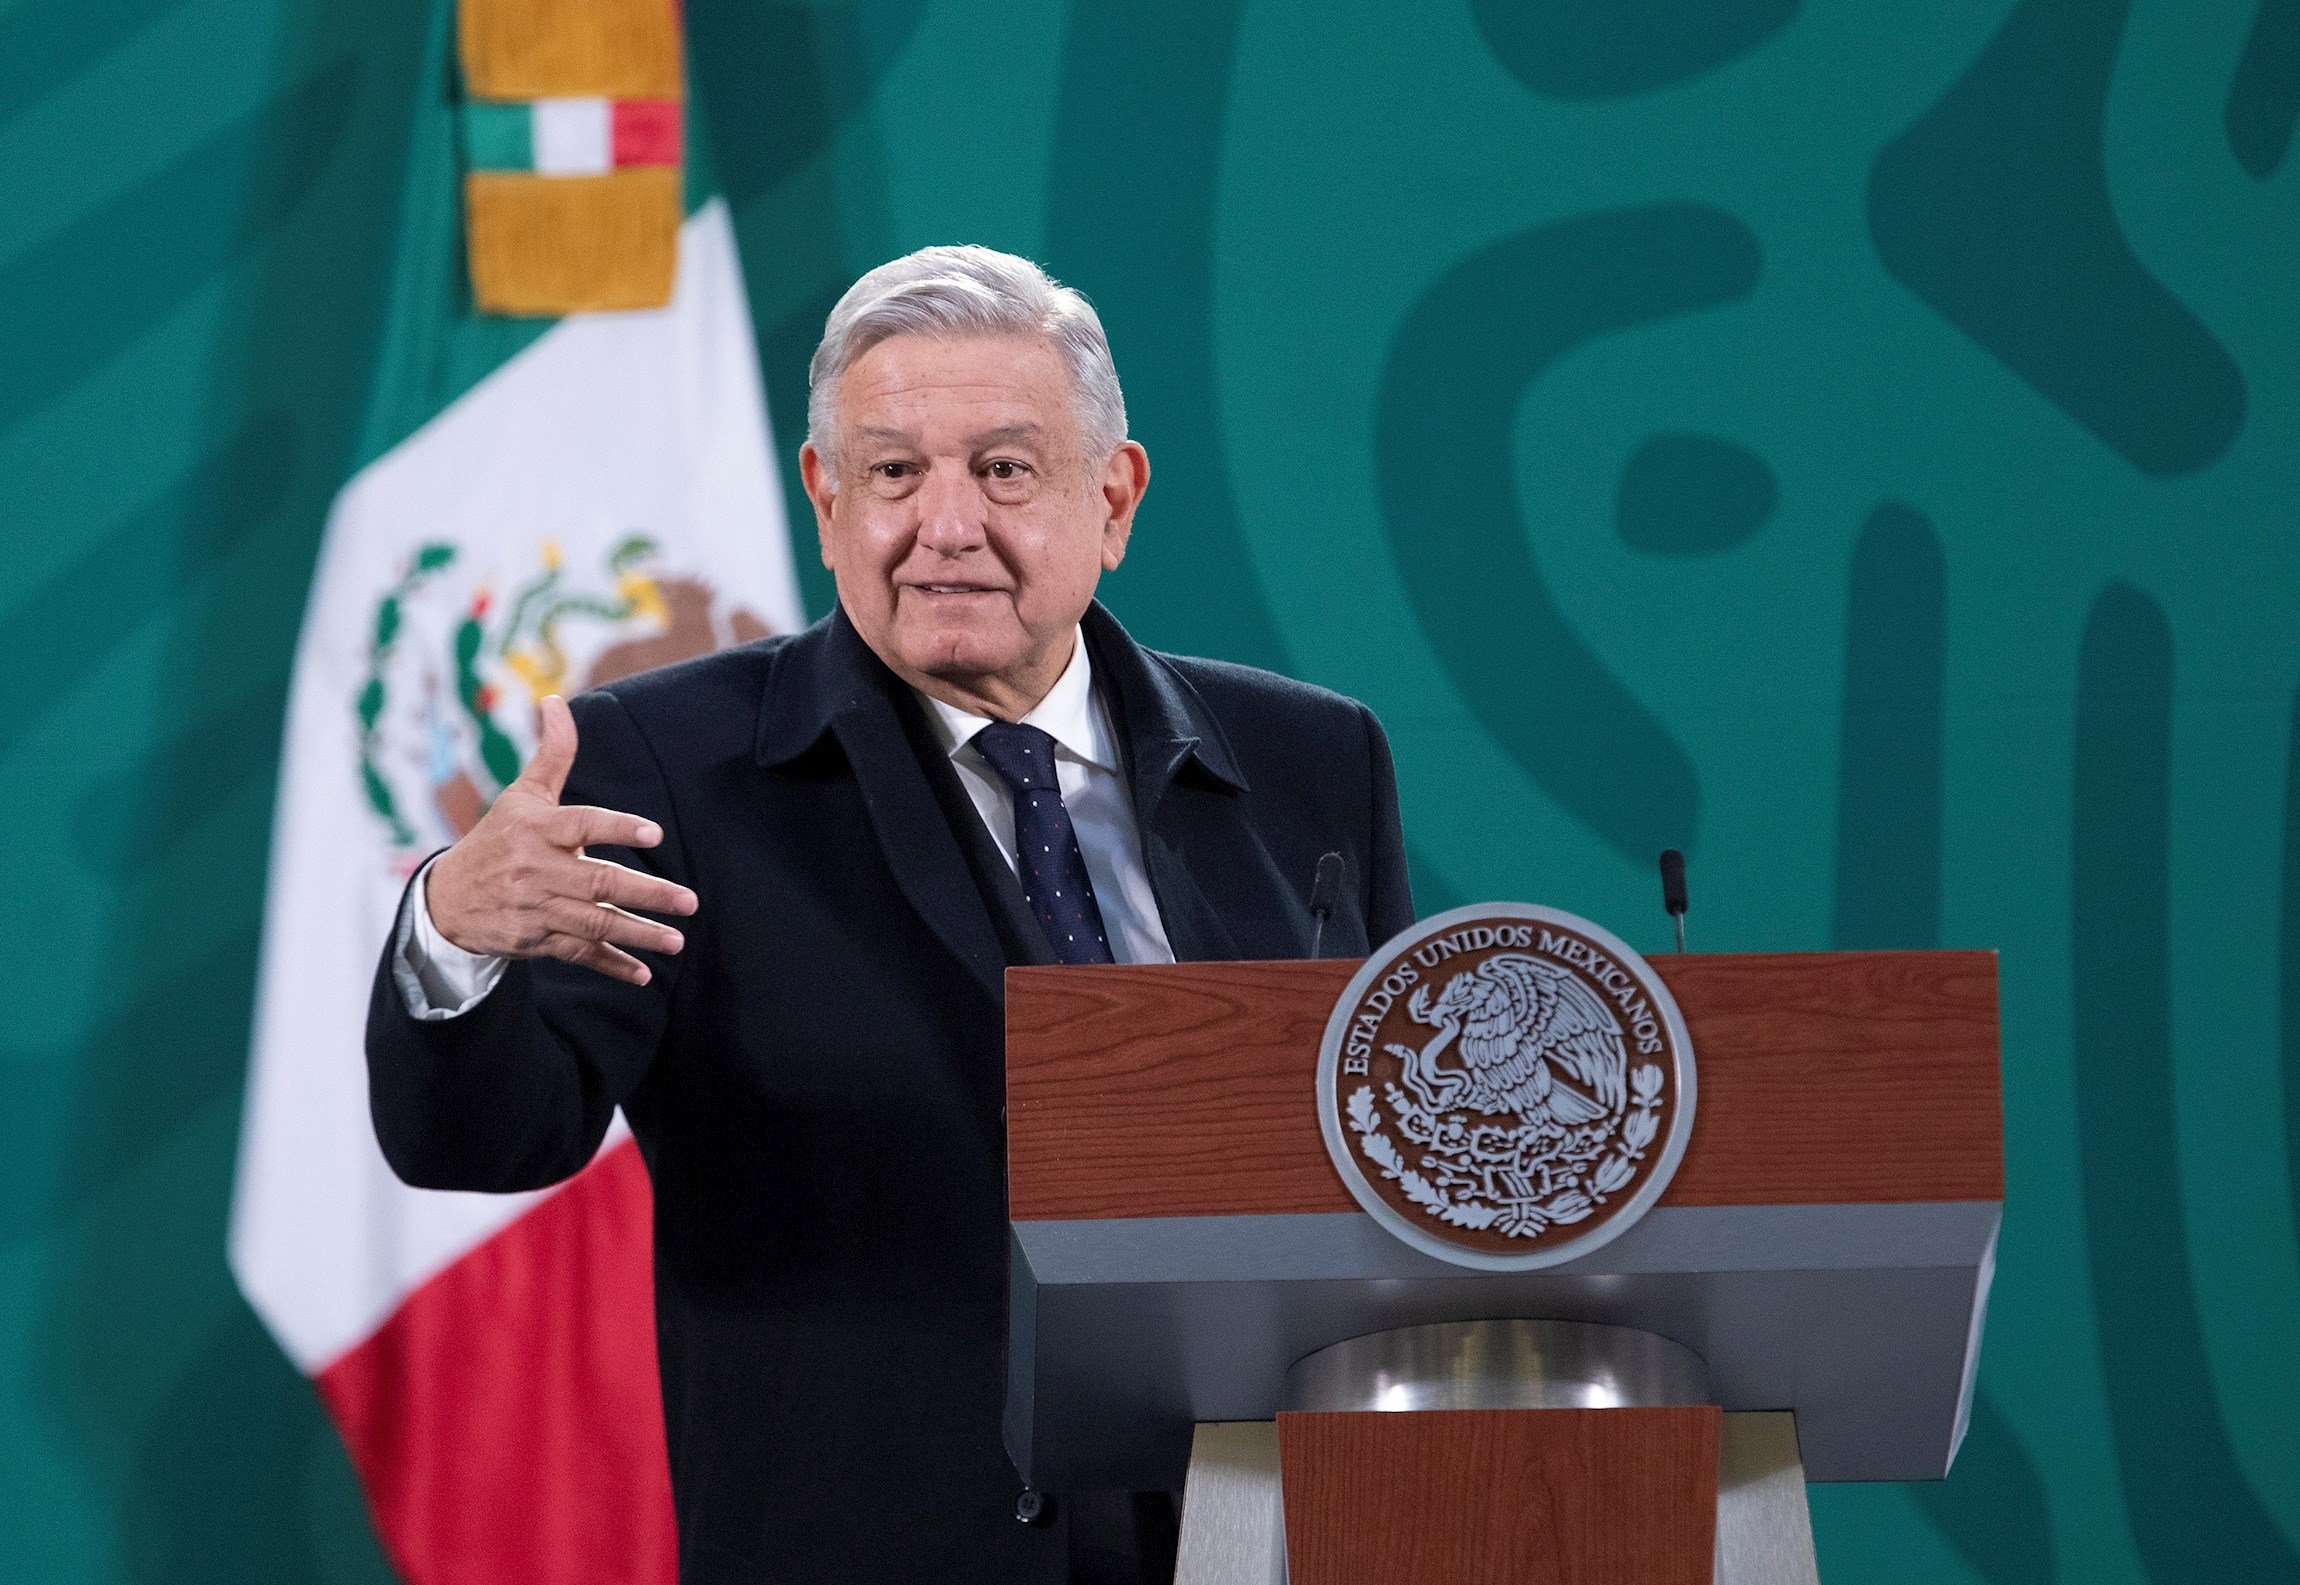 El president de Mèxic deixa en evidència Espanya per la detenció de Hasél